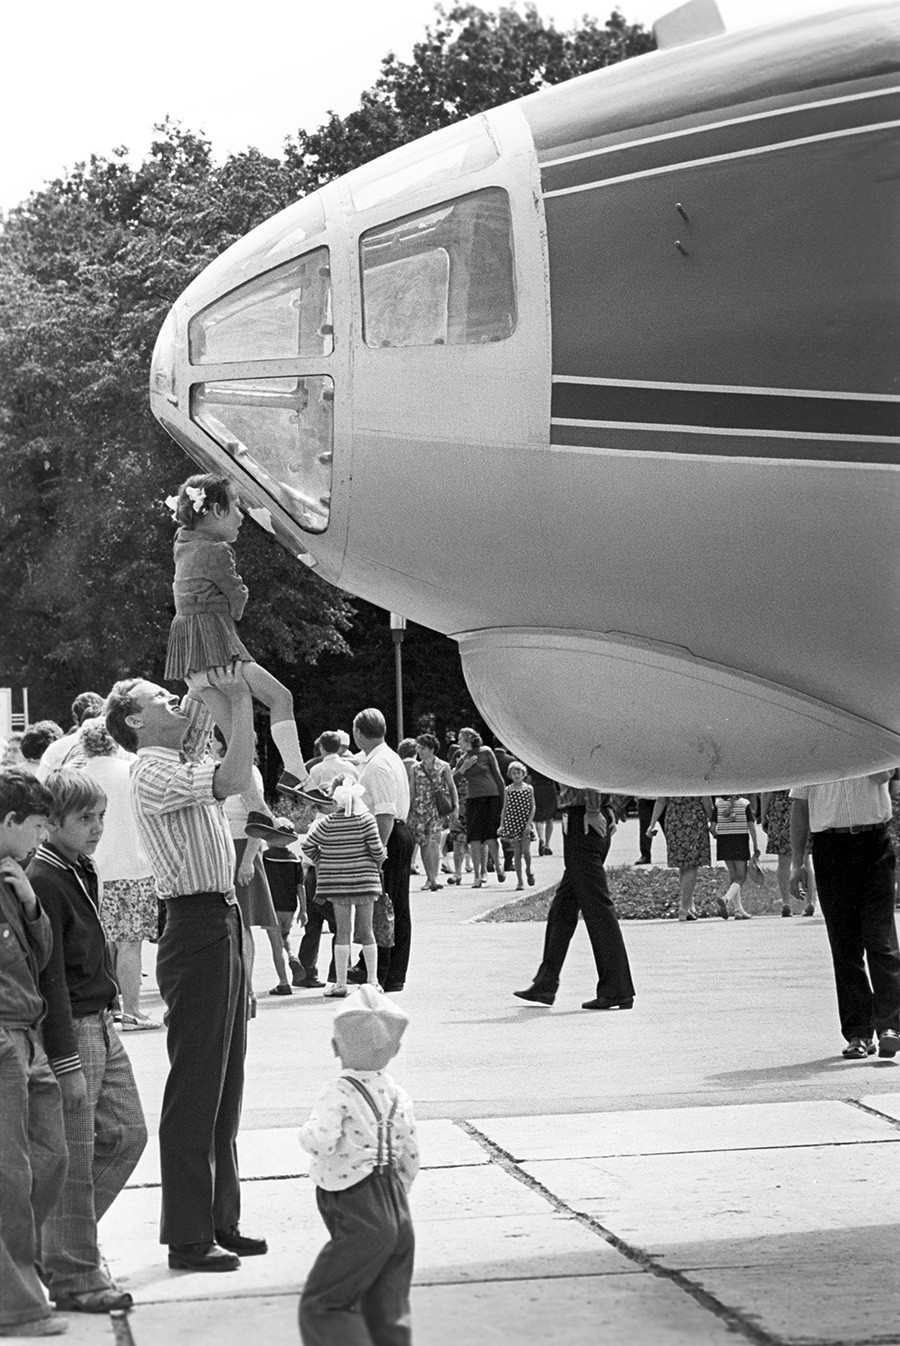 El avión de cine Antoshka, basado en el An-10, en el parque de Kuibishev, llamado así por Yuri Gagarin (ahora Samara), 1977